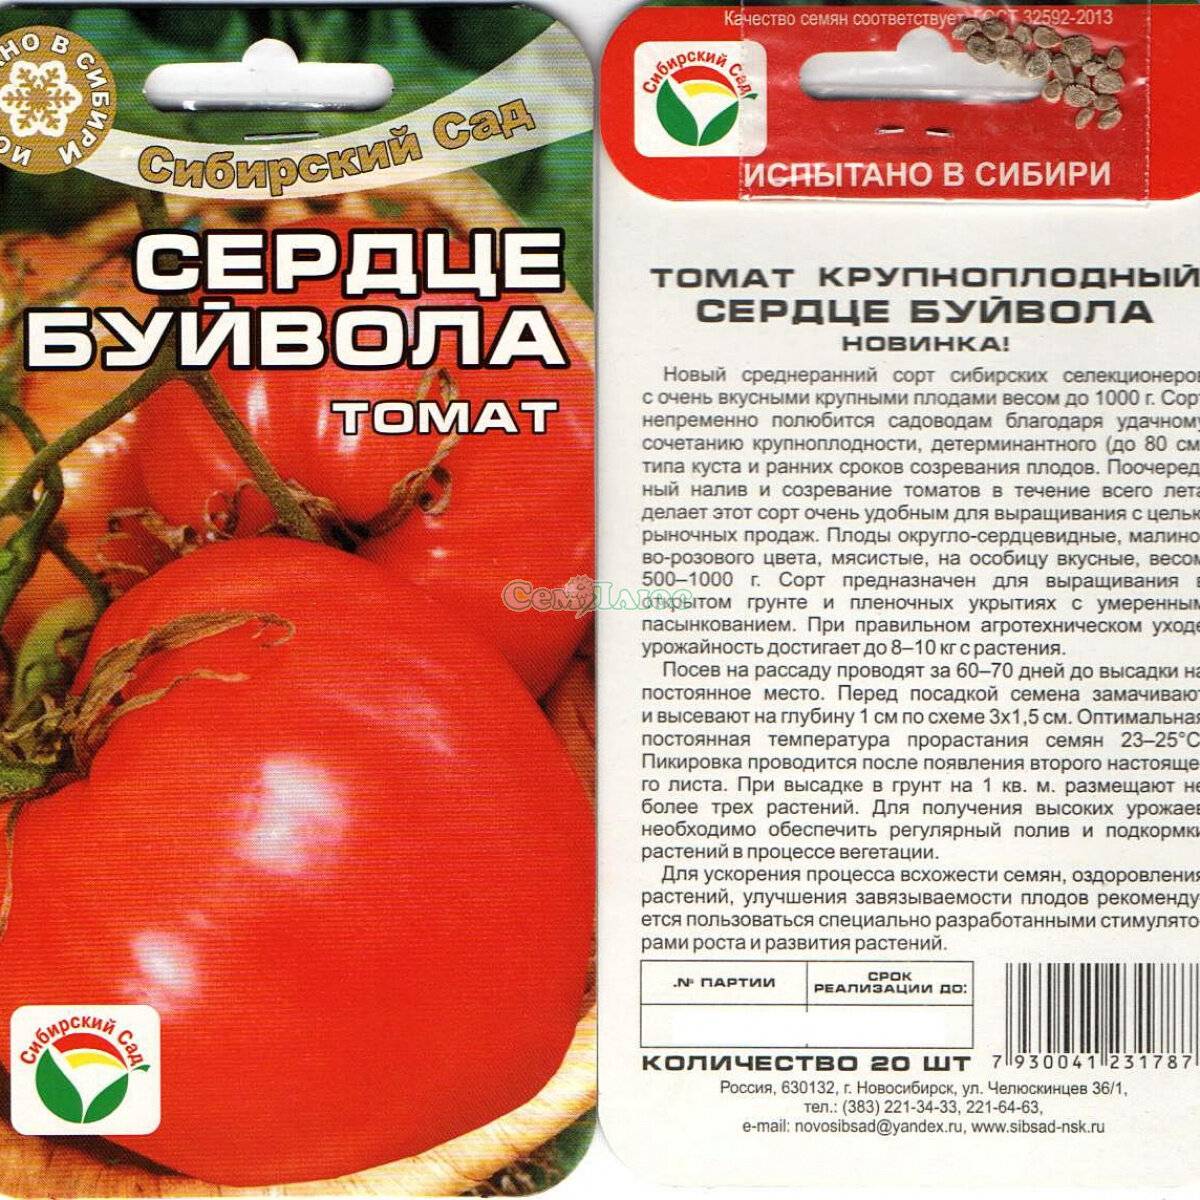 Томат алези (f1): описание гибрида помидоров, его преимущества и недостатки, урожайность, советы о том, как его вырастить